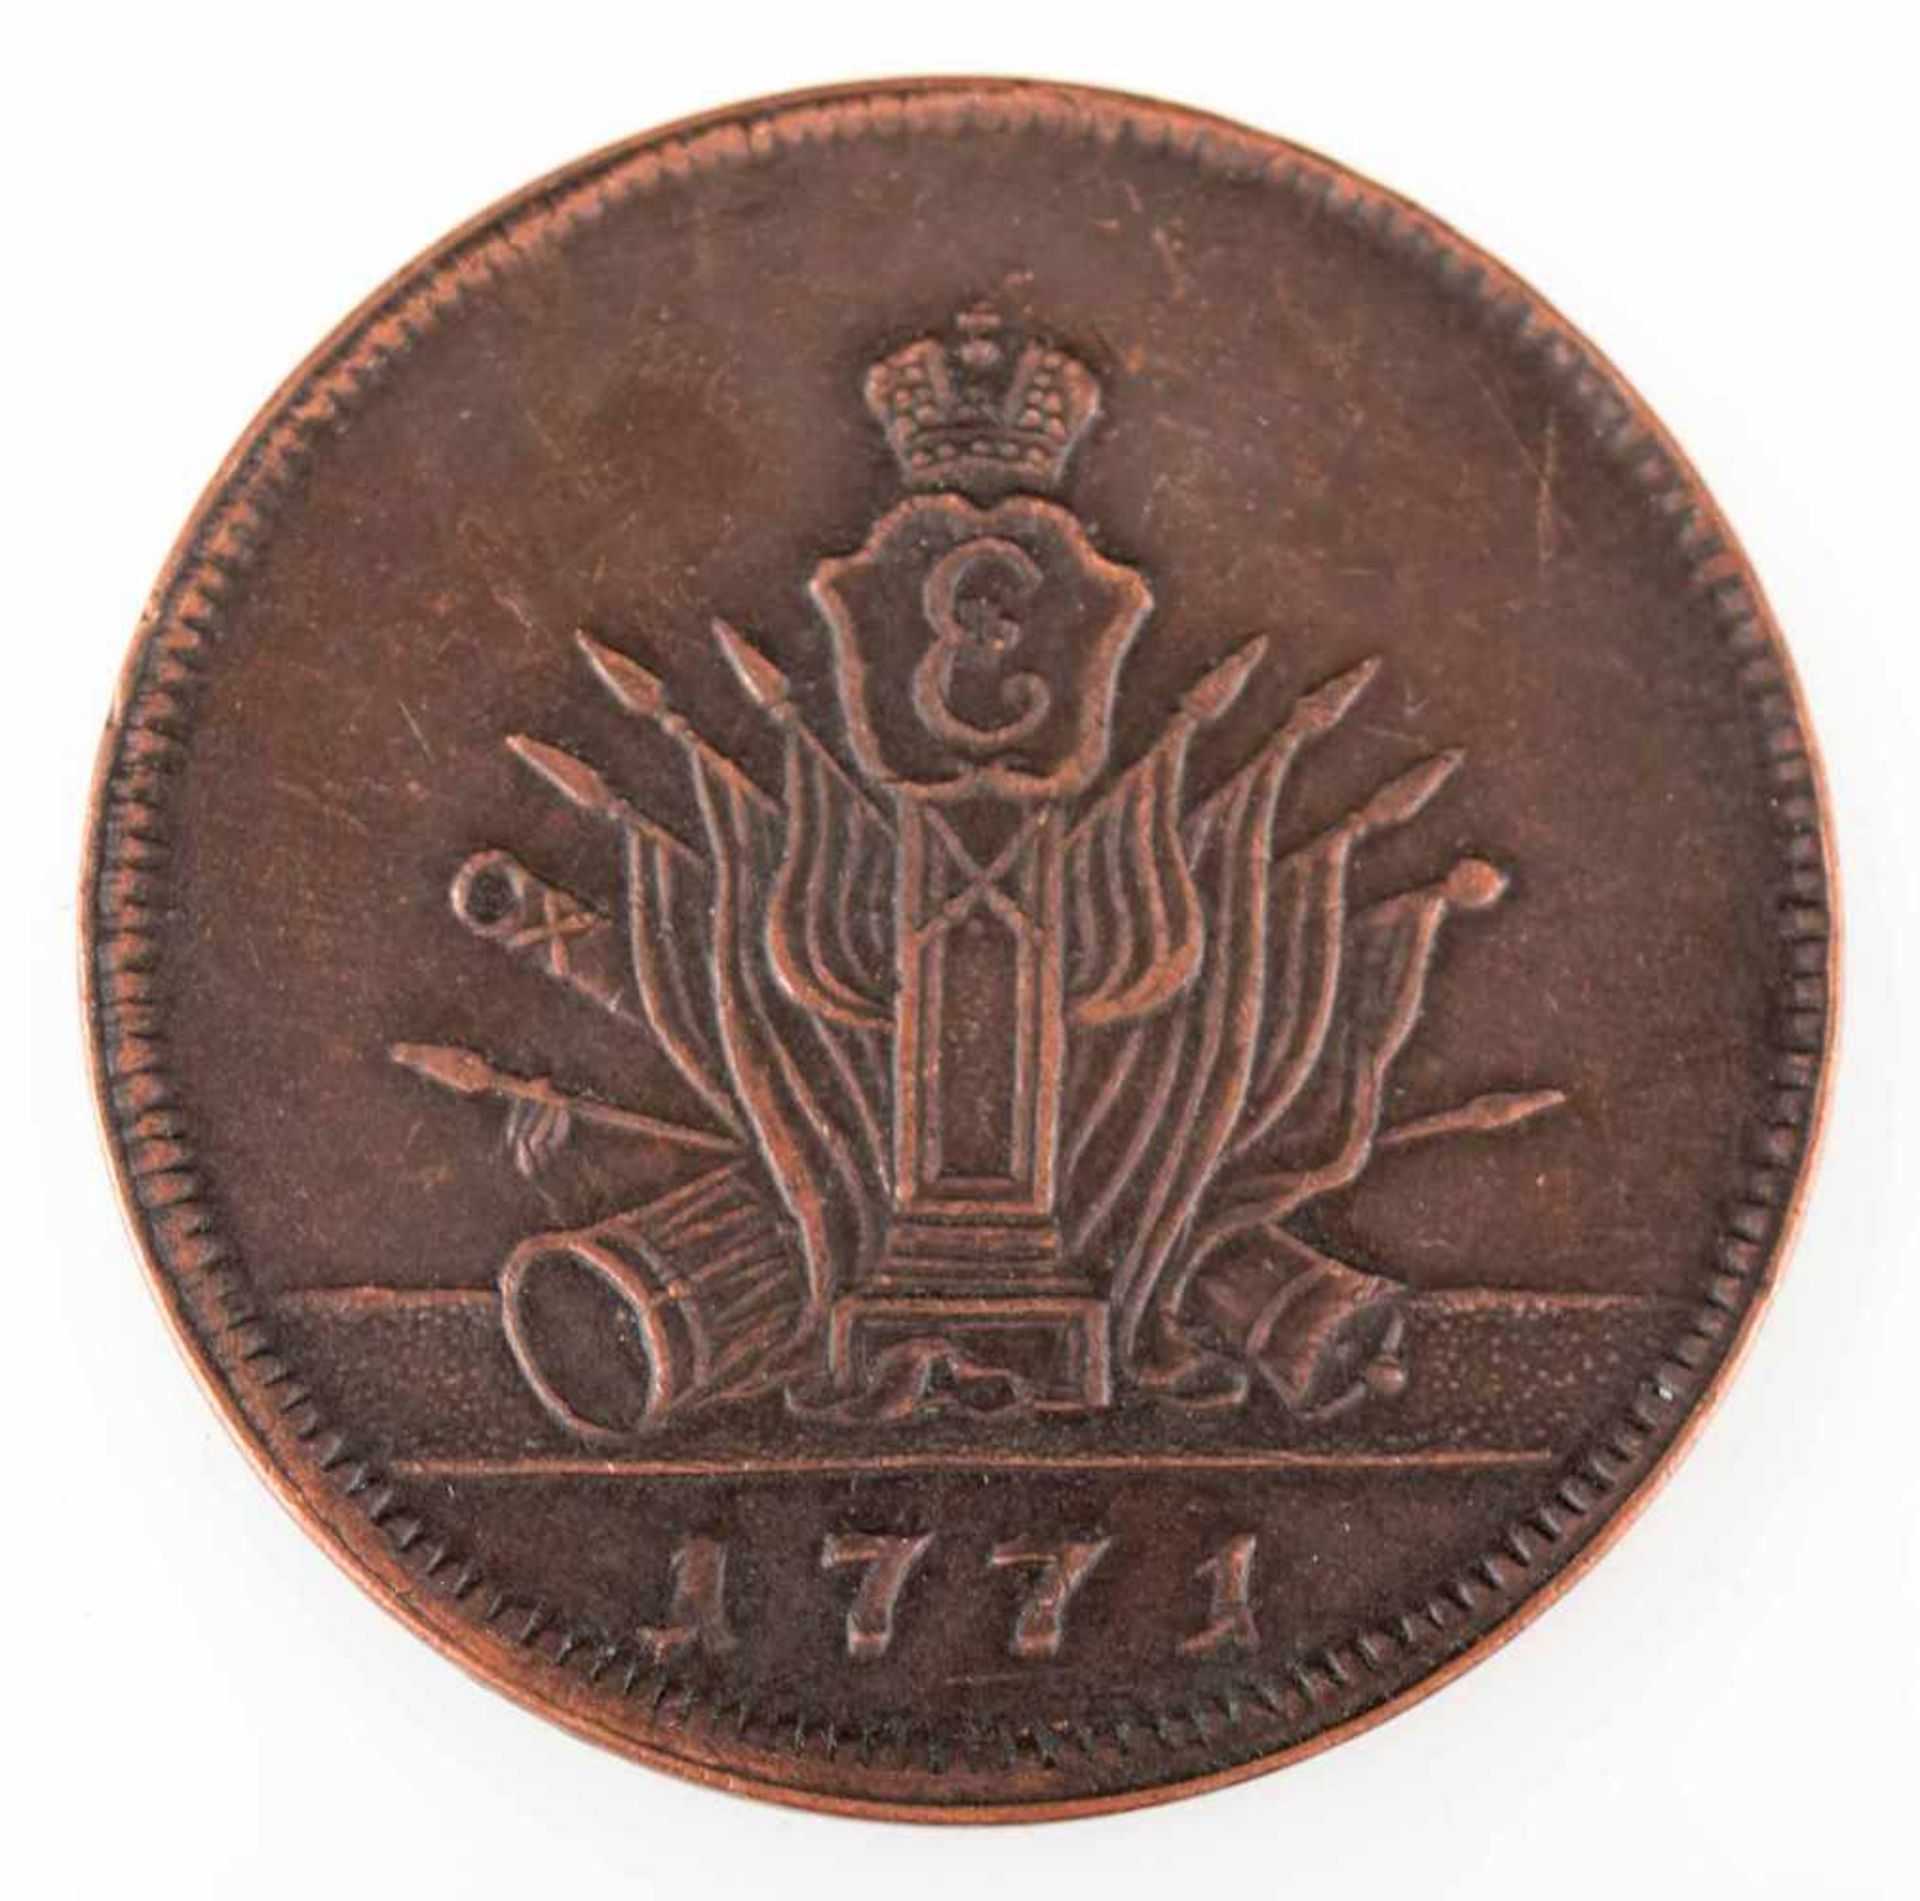 Münze Russland 1771 5 Kopeken, Kupfer, Regierungszeit Katharina II. (1762 - 1796), av. - Bild 2 aus 3